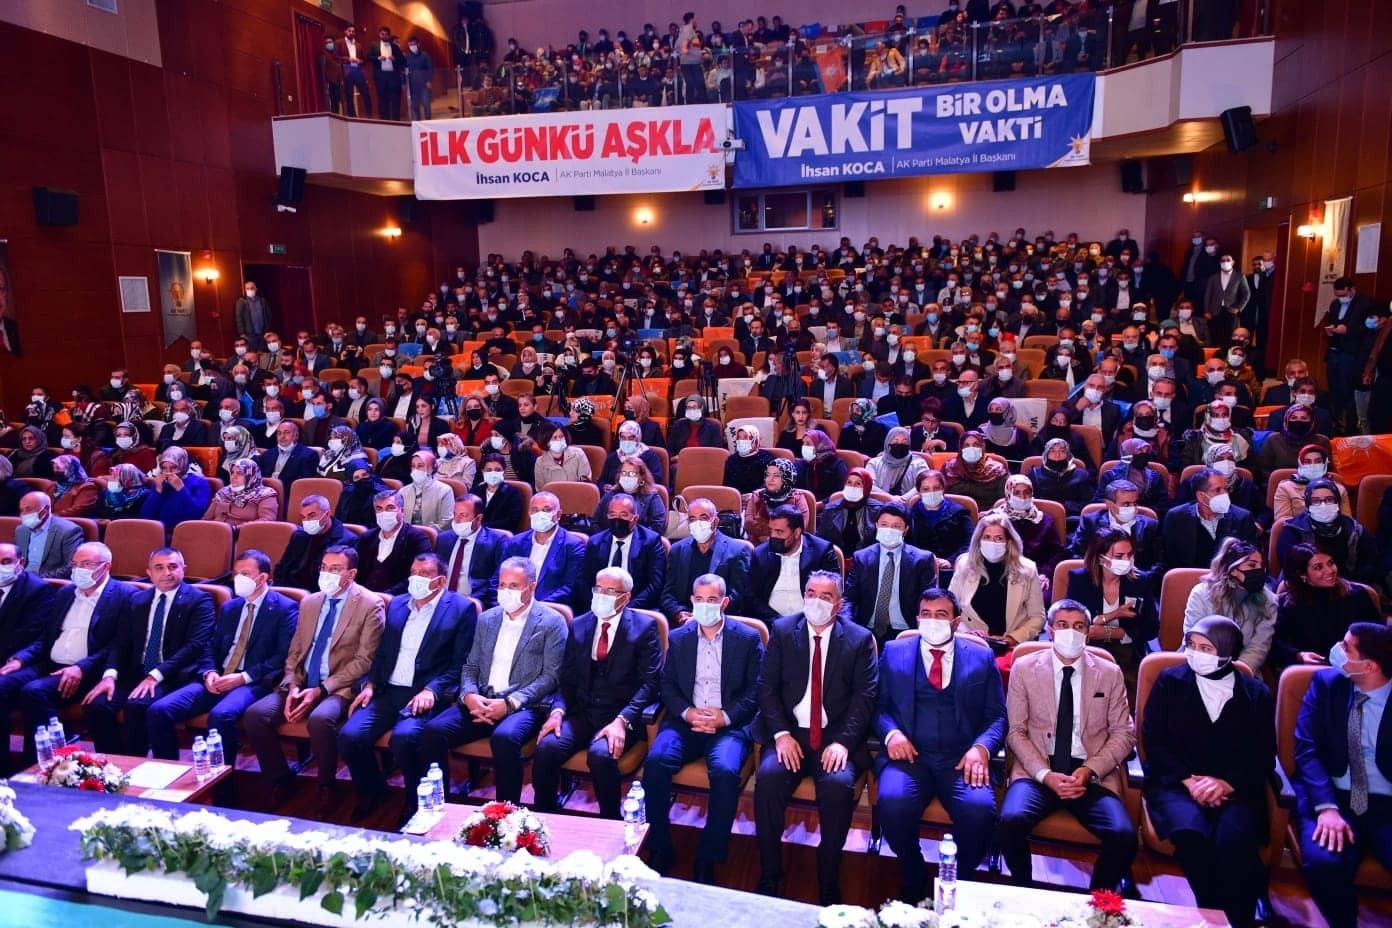 AK Parti Genel Başkan Yardımcısı Şahin: “Bugün CHP, HDP aracılığı ile Kandil’den talimat alır hale gelmiştir”